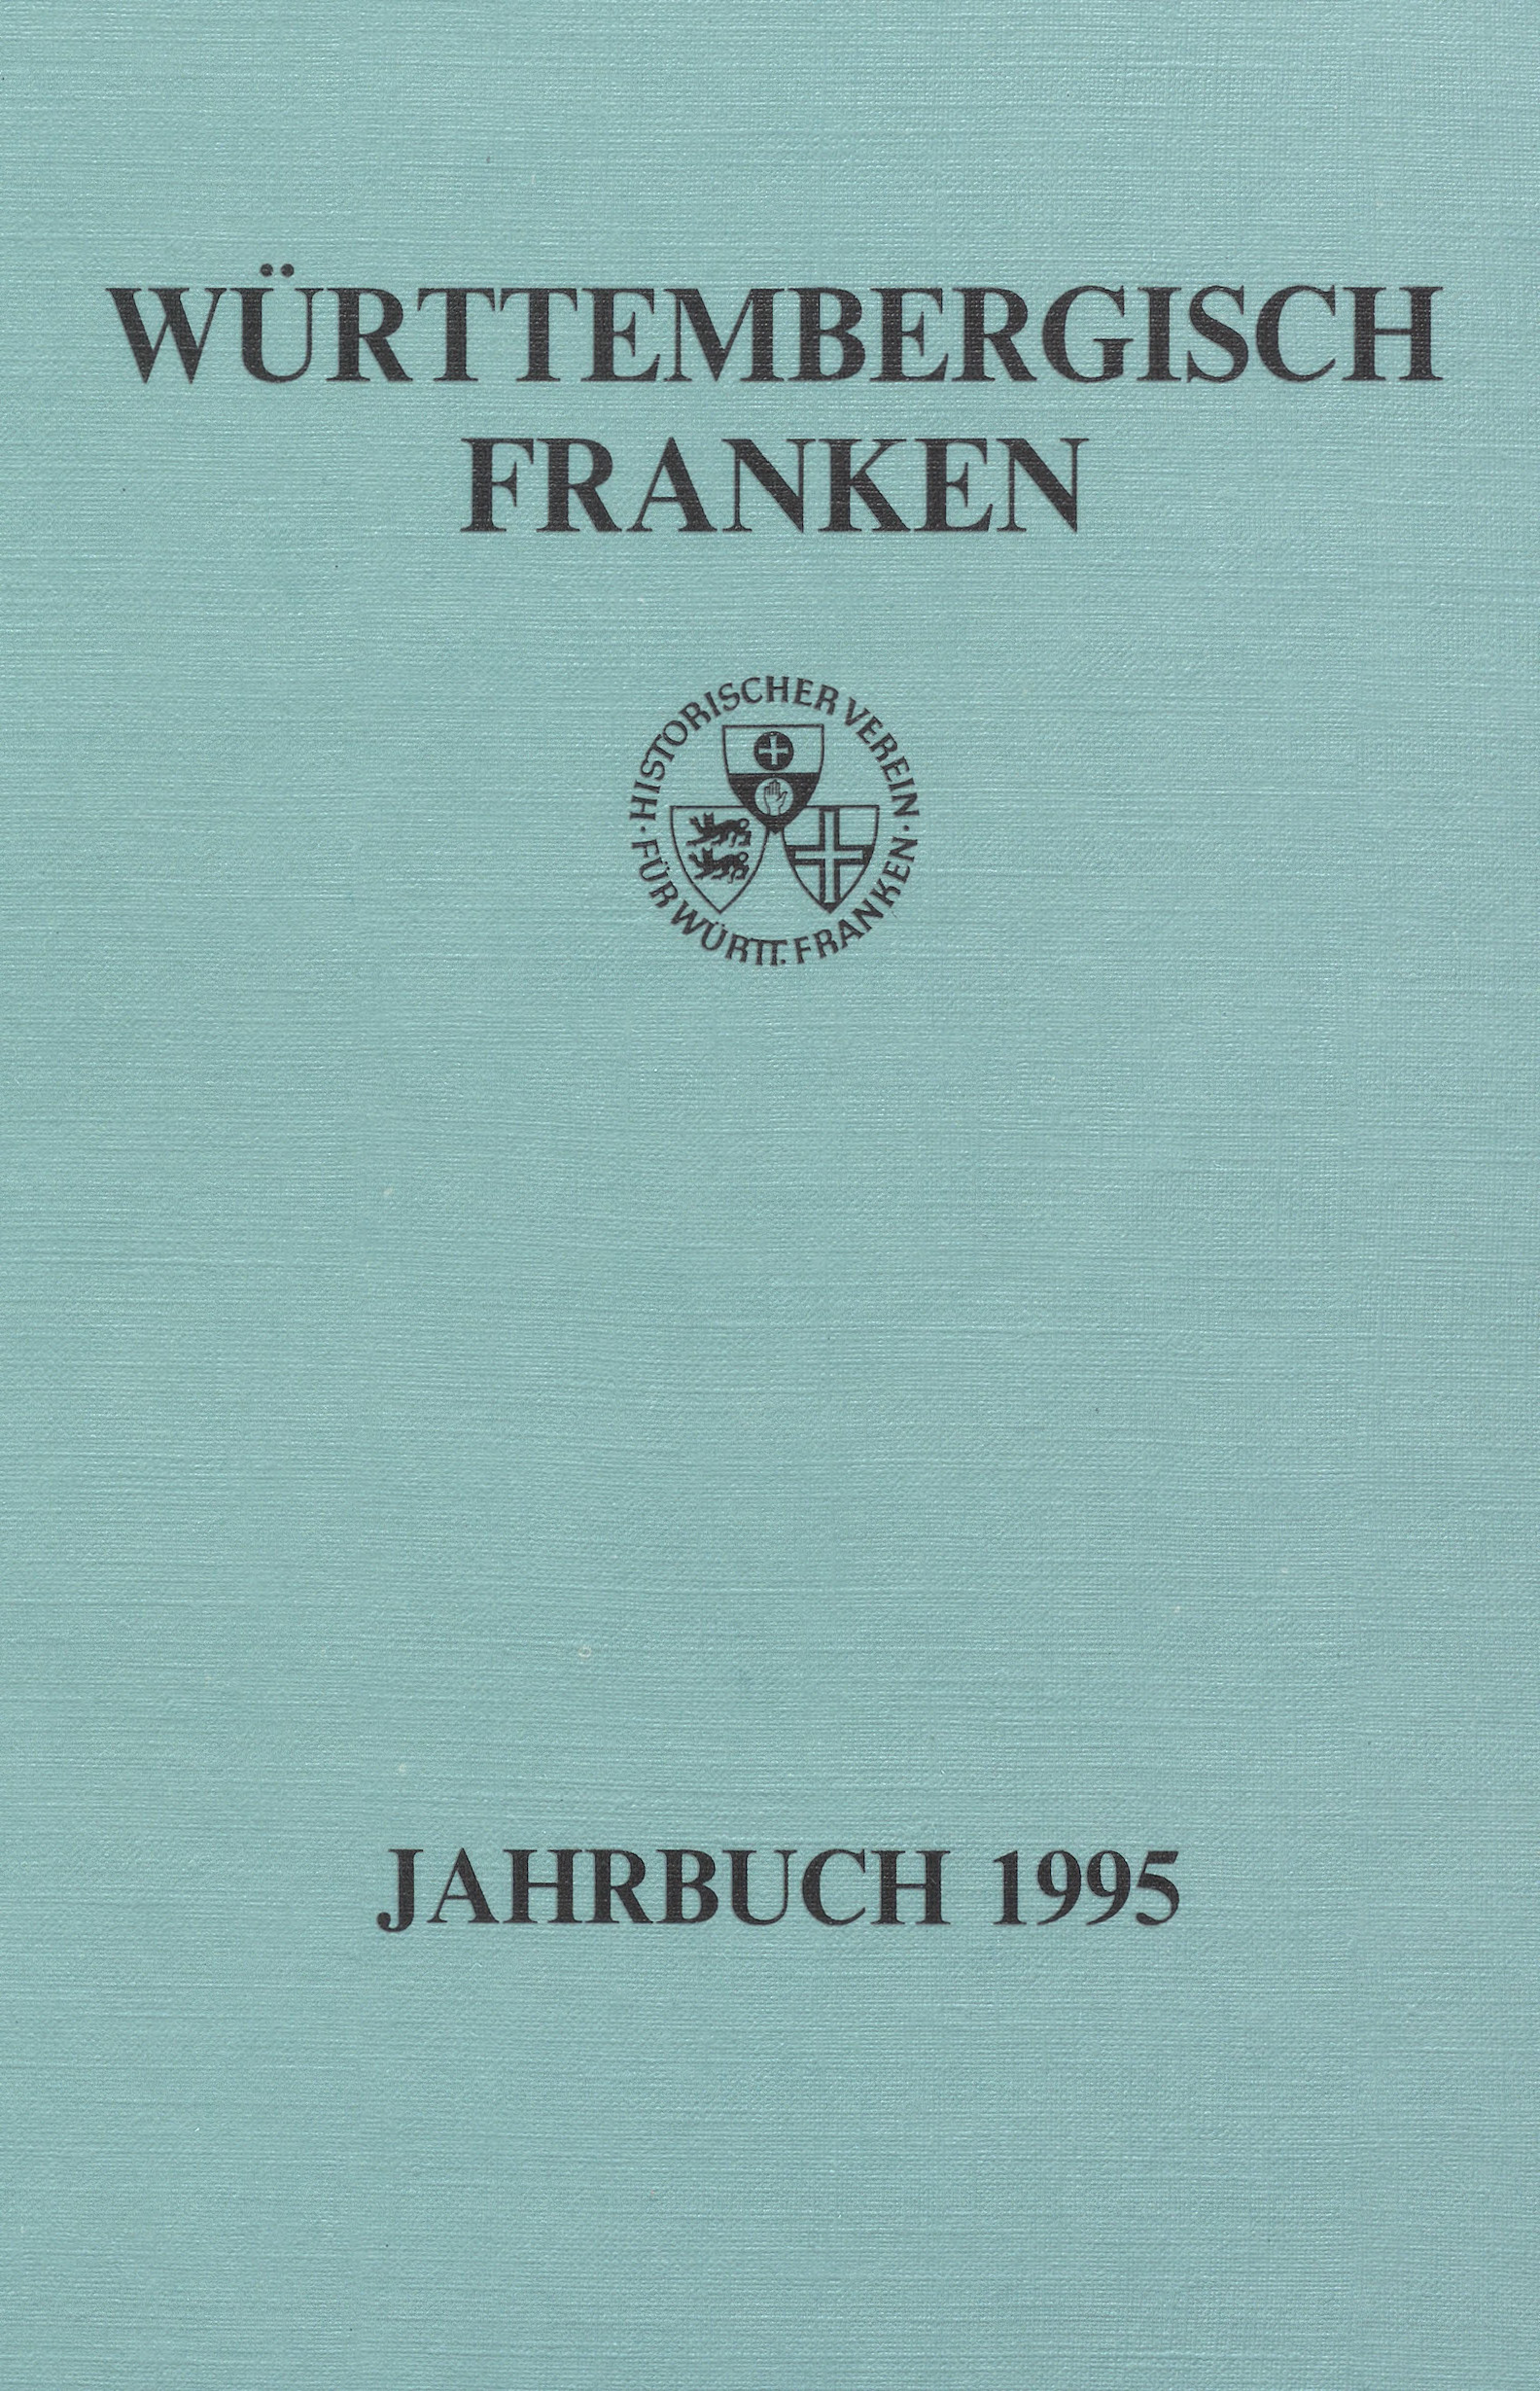                     Ansehen Bd. 79 (1995): Württembergisch Franken
                